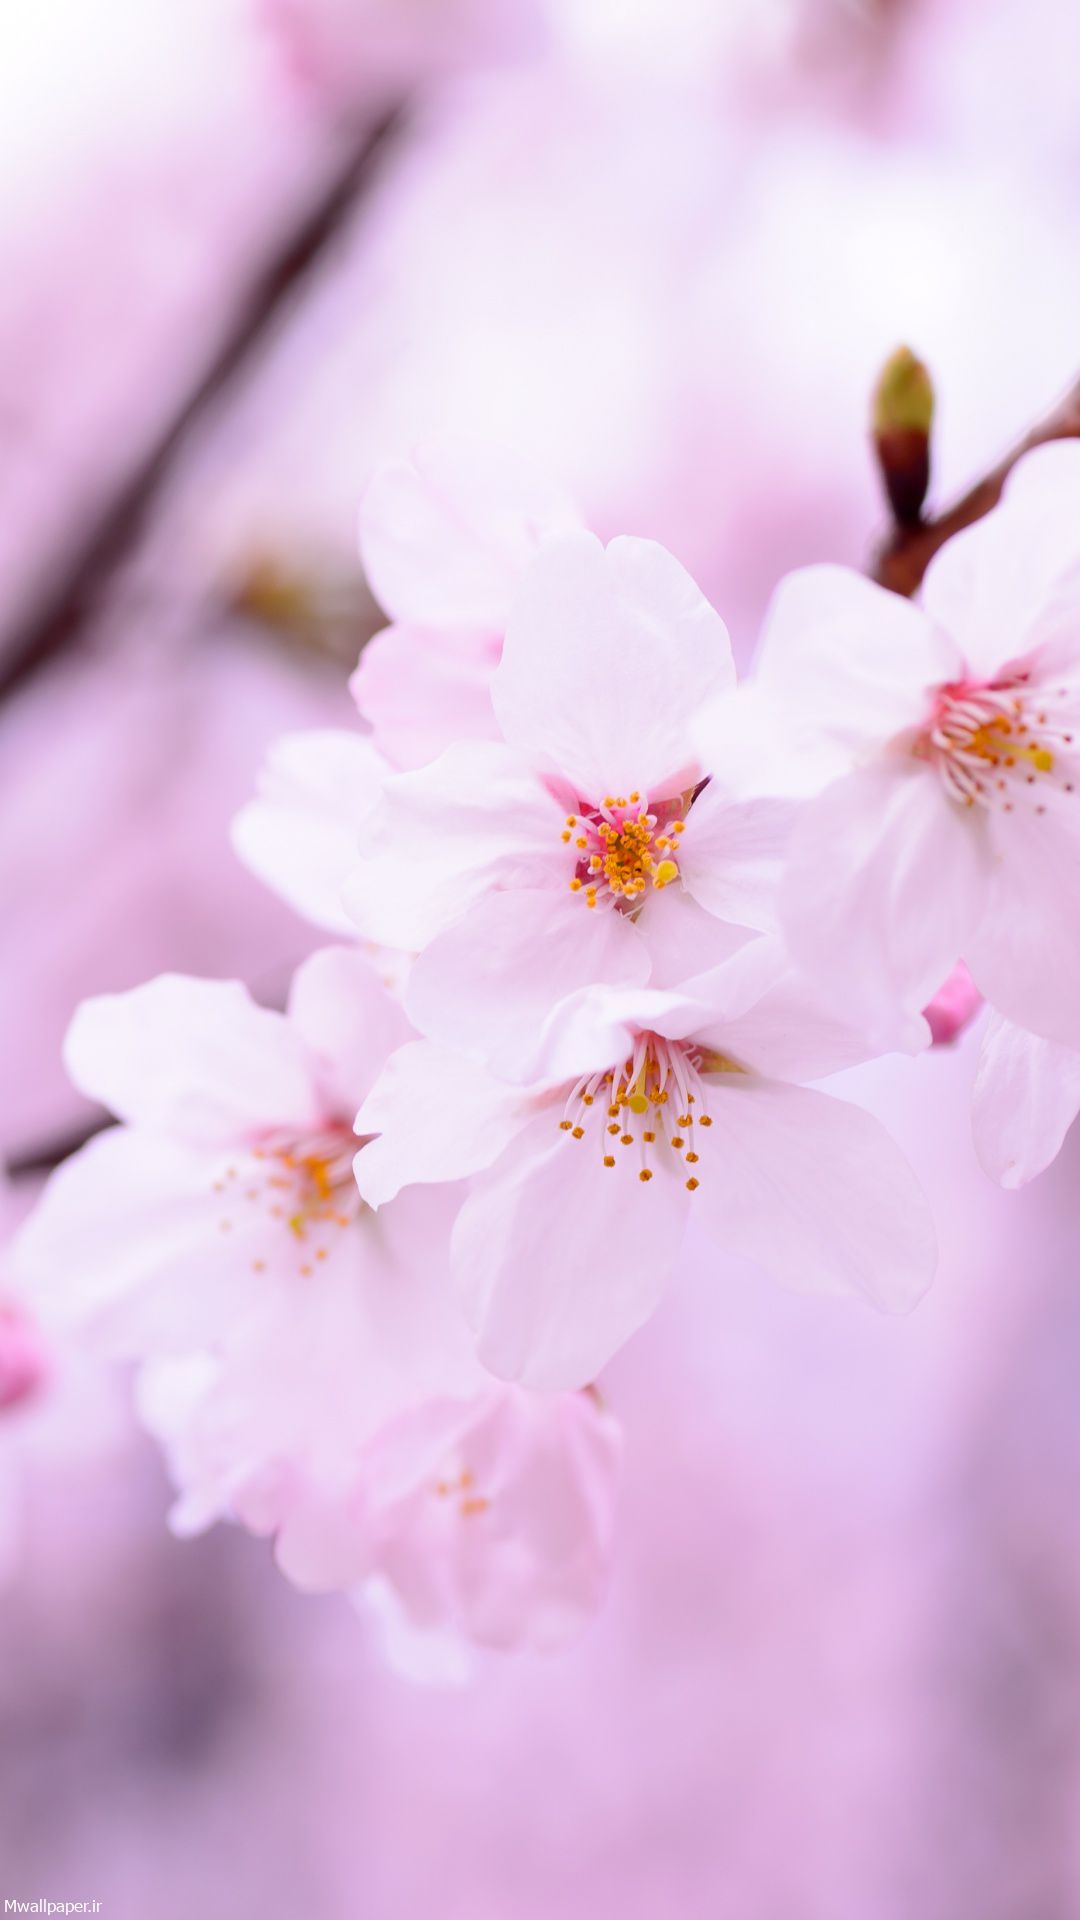 والپیپر موبایل شکوفه های گیلاس